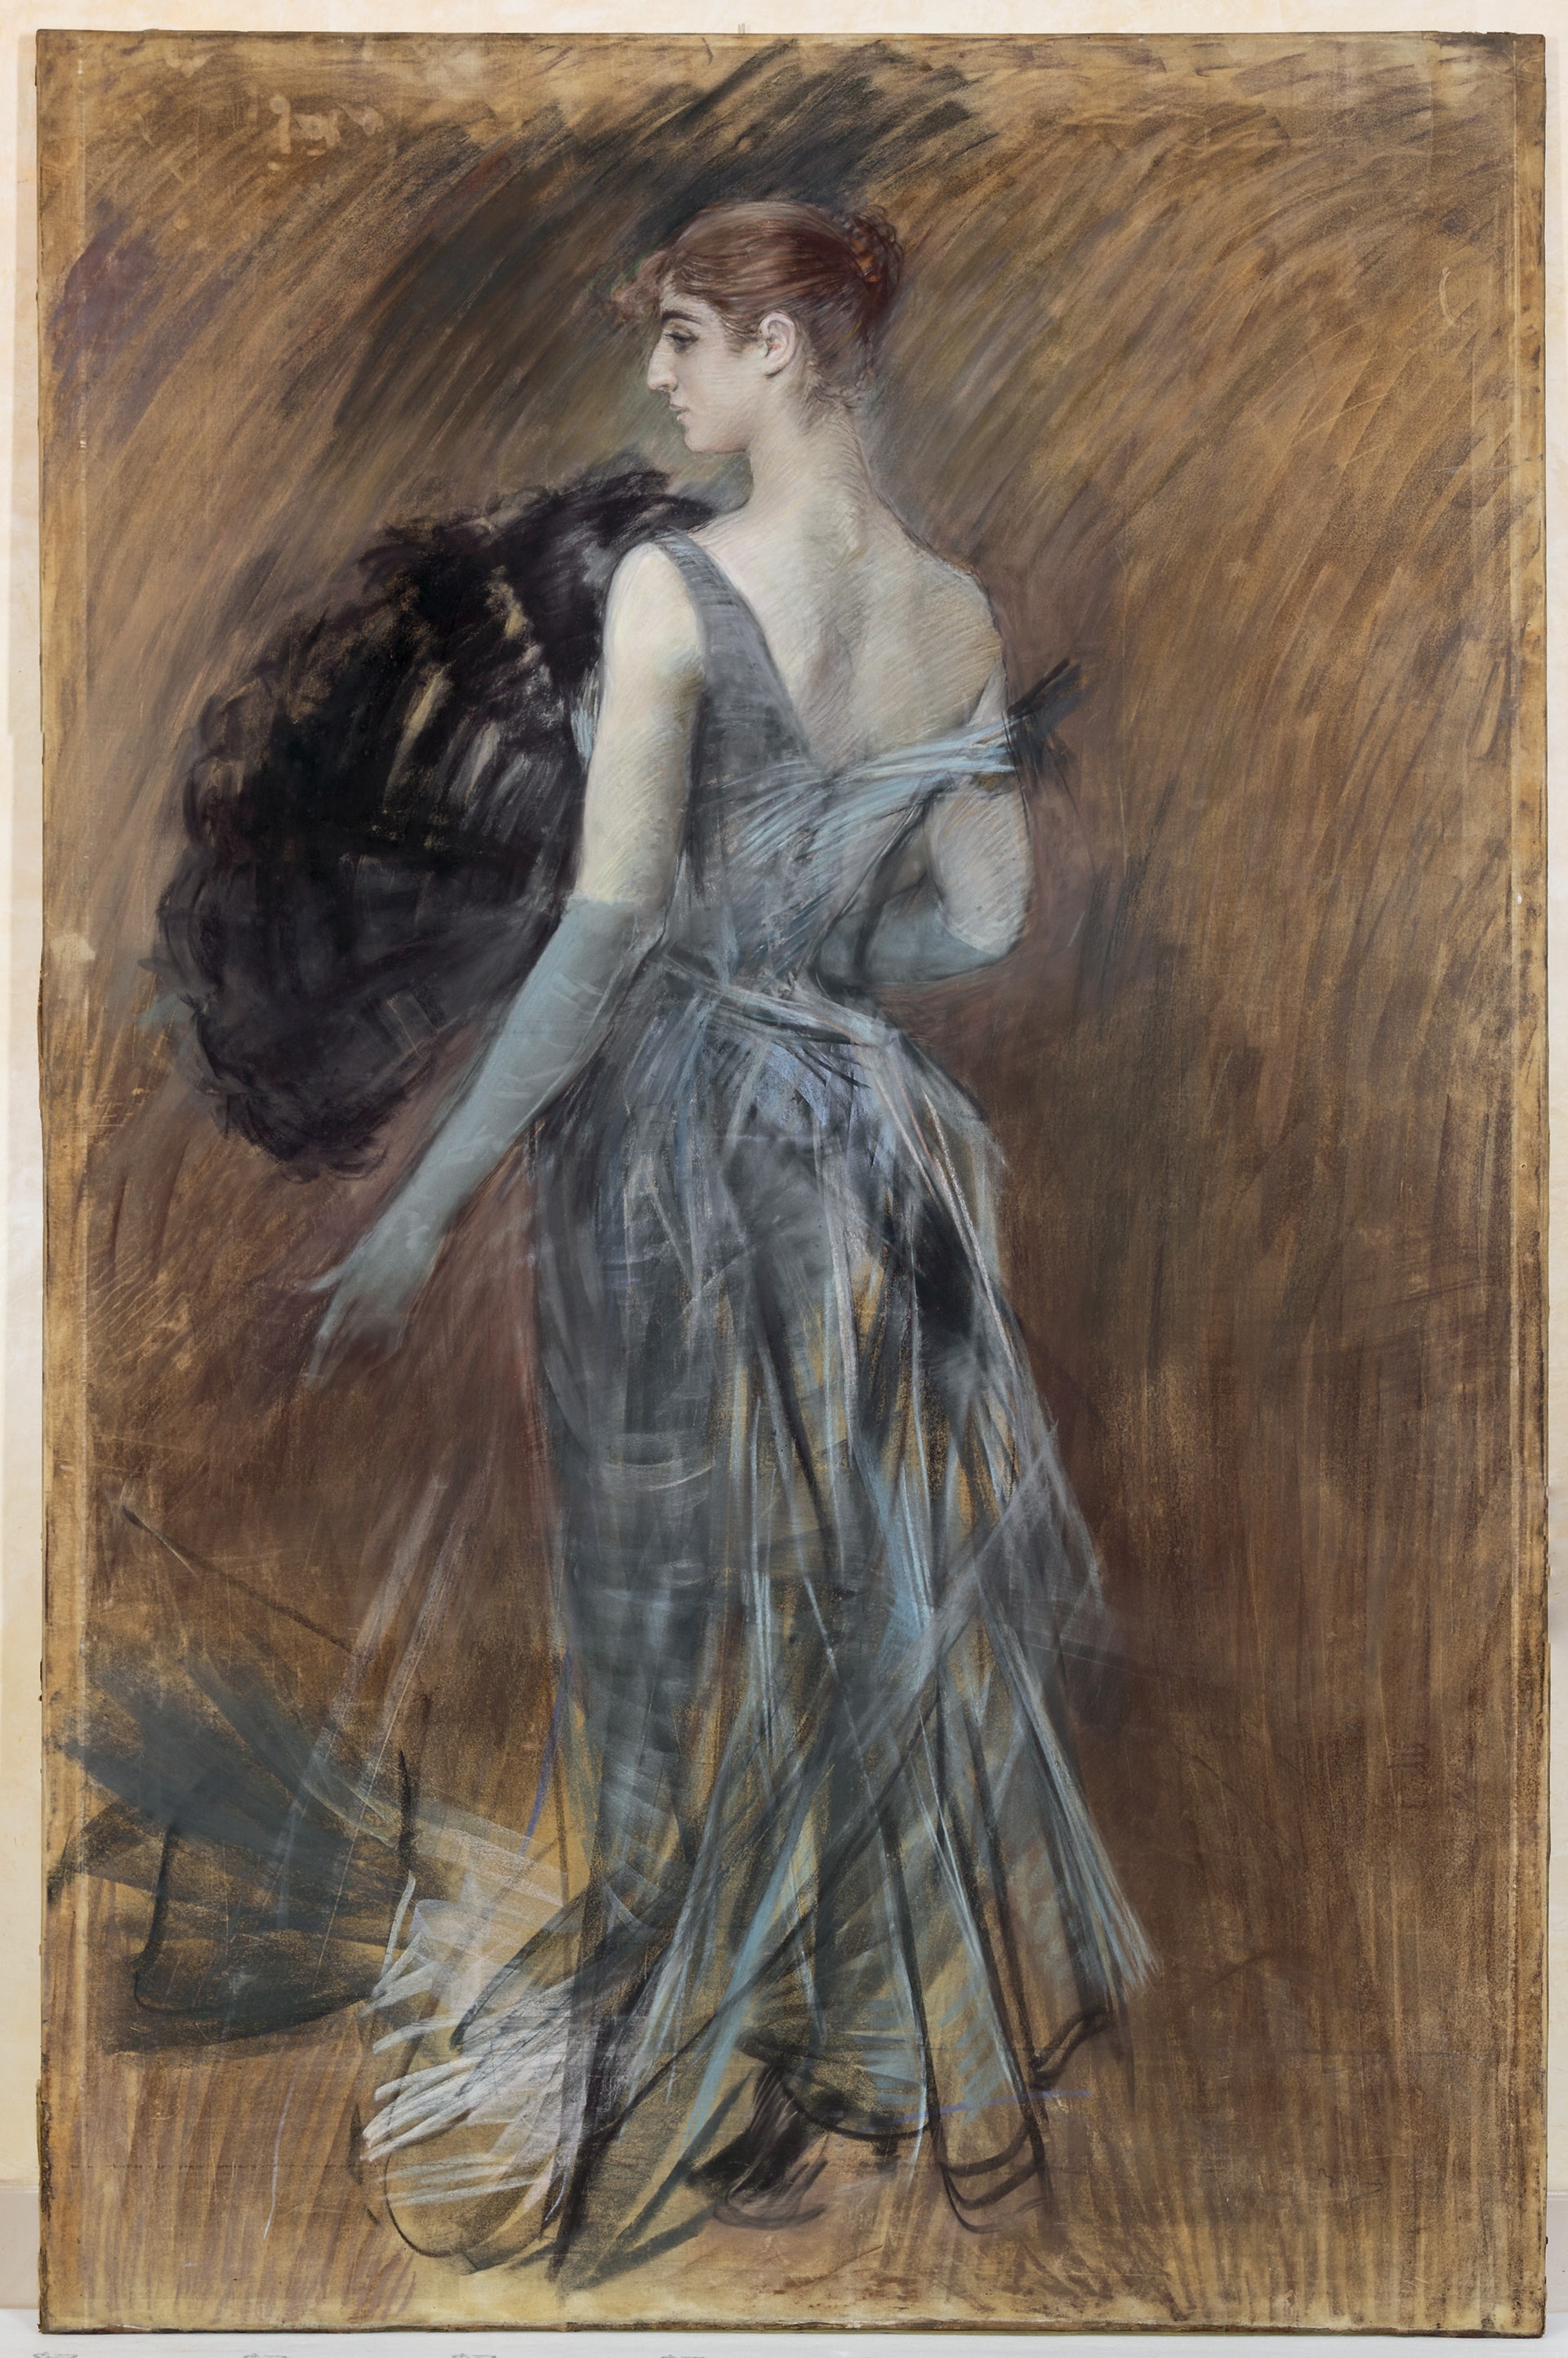 Giovanni Boldini "Signora bionda in abito da sera", 1889 ca. Pastello su carta applicata su tela, 220 x 150 cm. Fondazione Cariparma, Parma